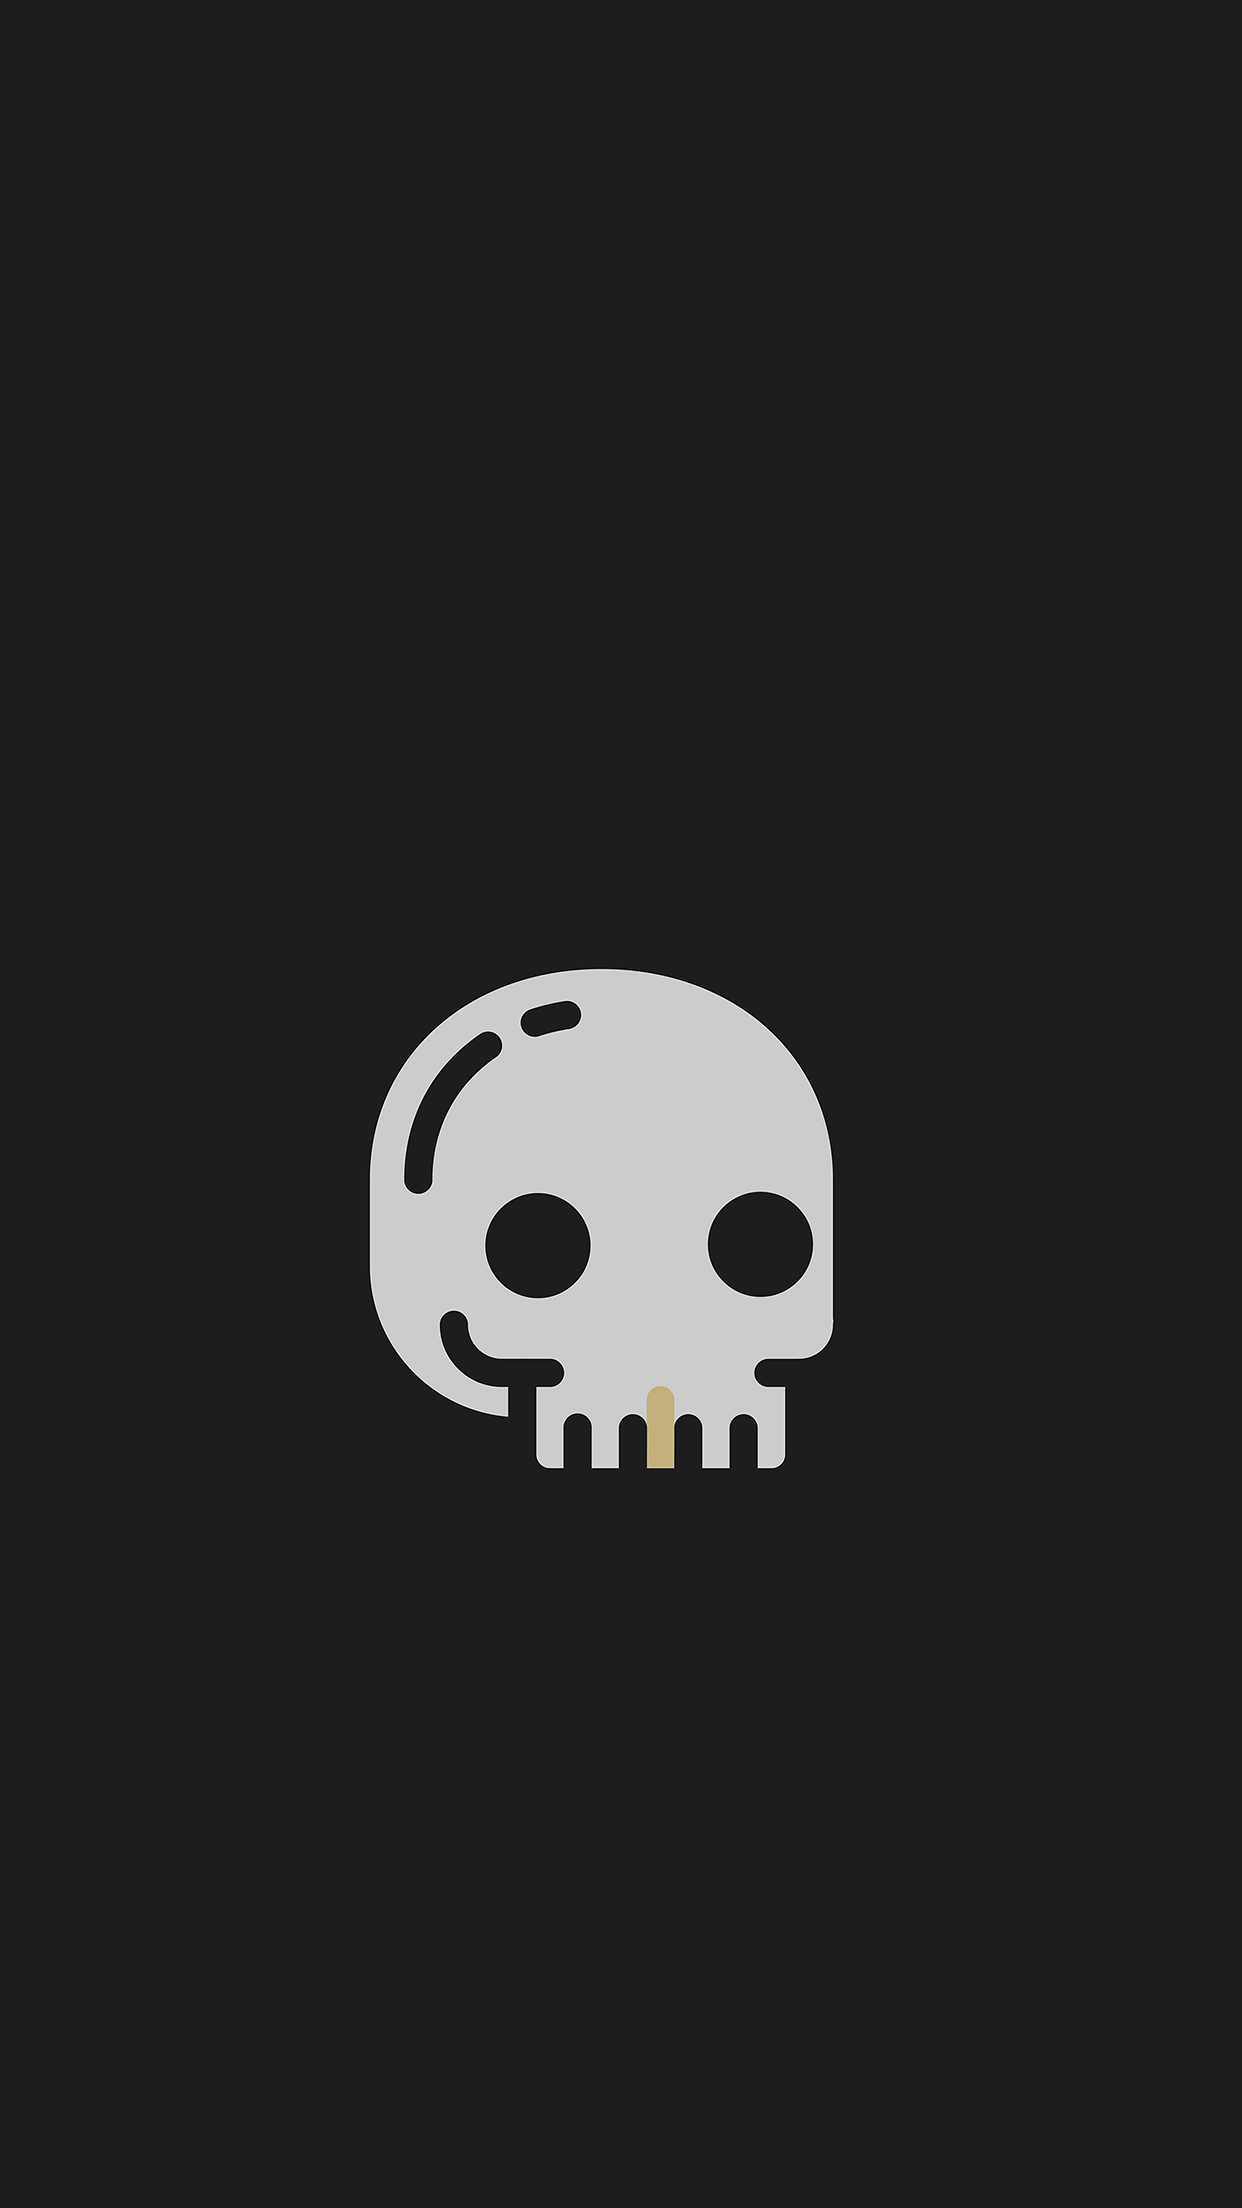 app lock wallpaper,skull,bone,illustration,logo,font